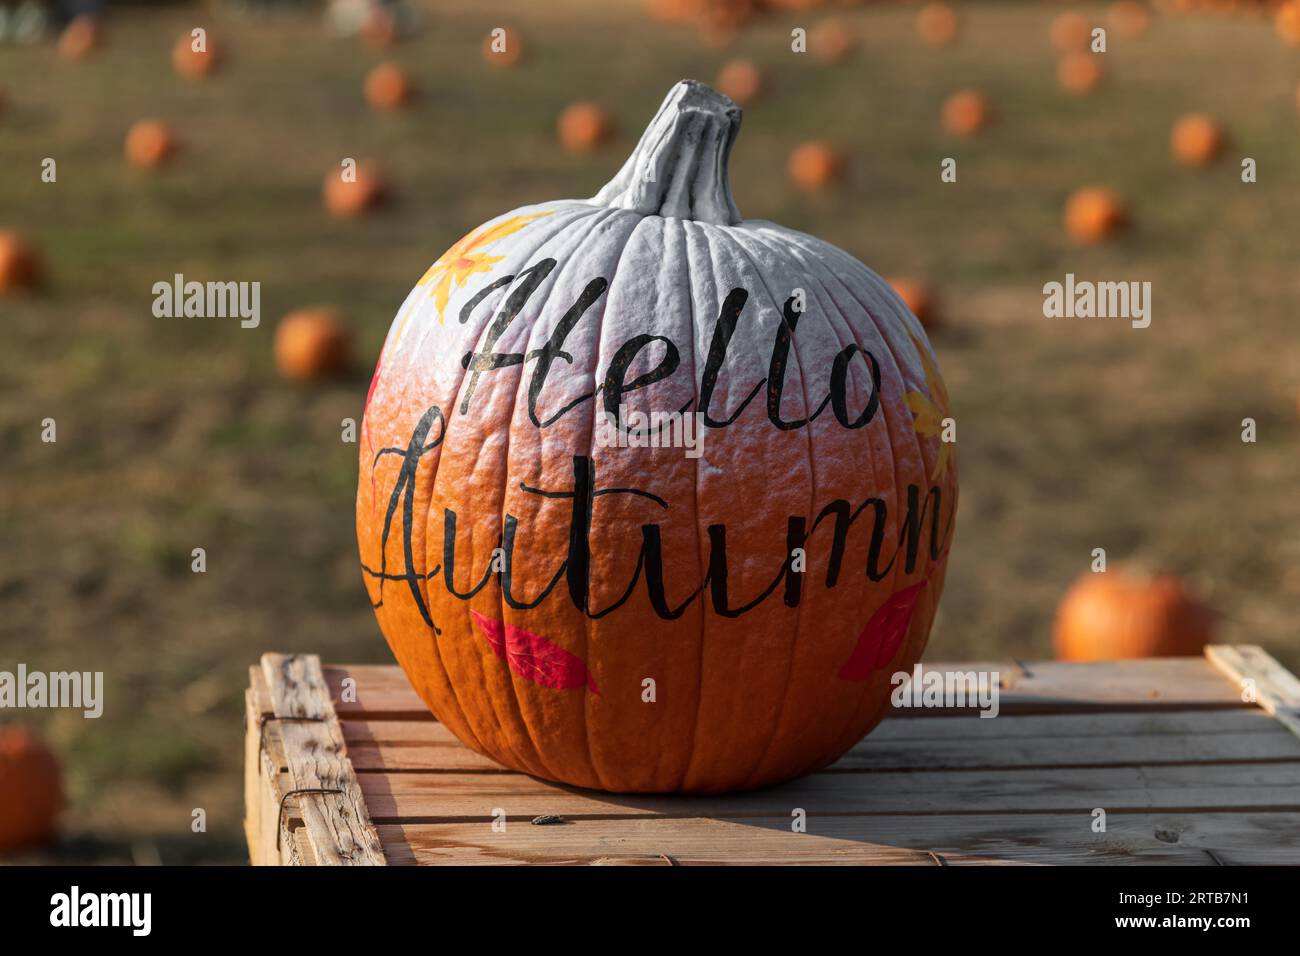 Citrouille orange mûre avec inscription Hello Autumn placée sur la table en bois sur fond flou du champ de ferme Banque D'Images